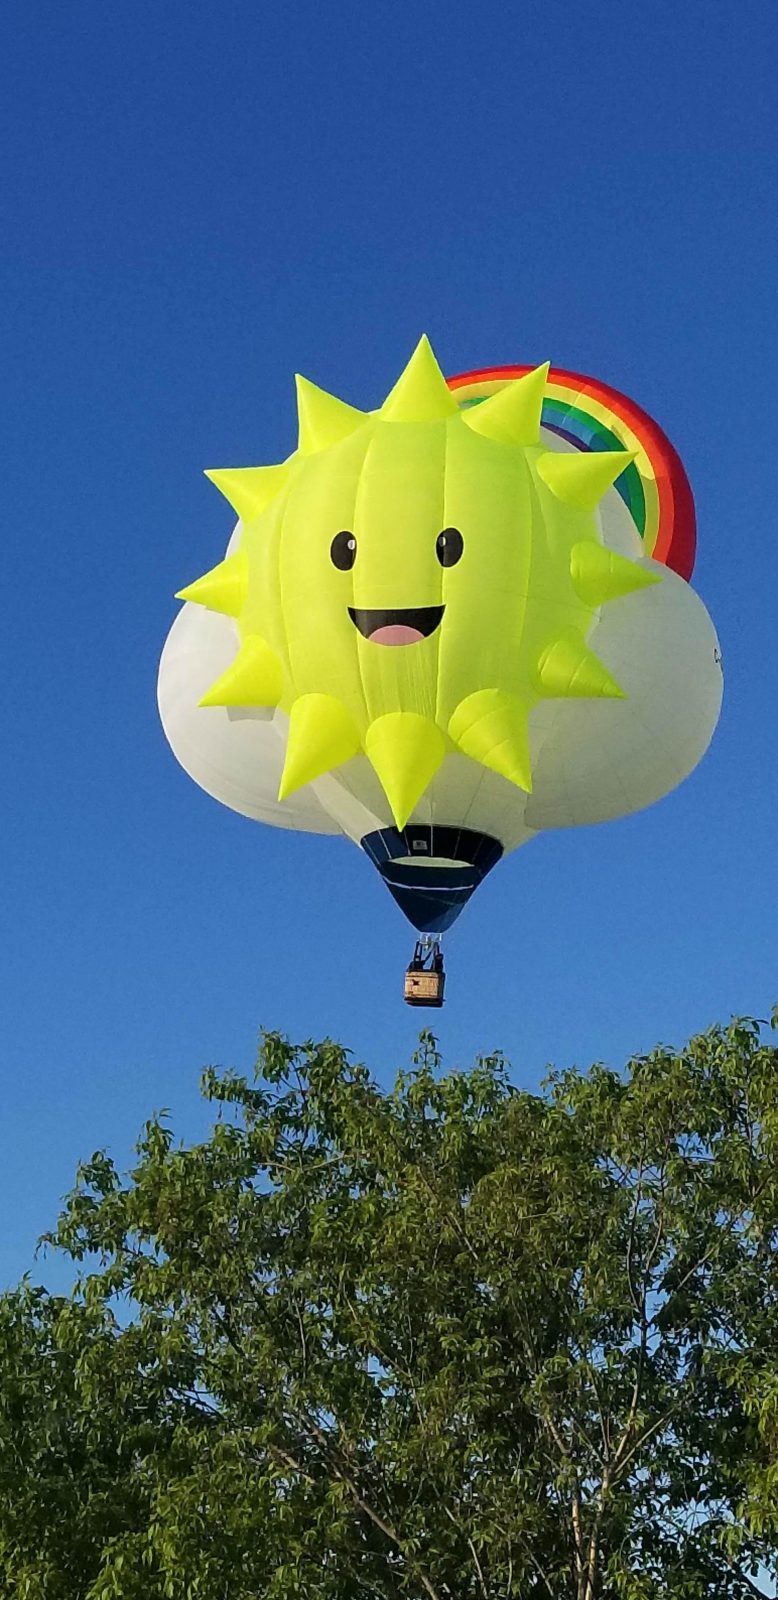 Soixante-quatre ballons à admirer dans le ciel à l’International de montgolfières